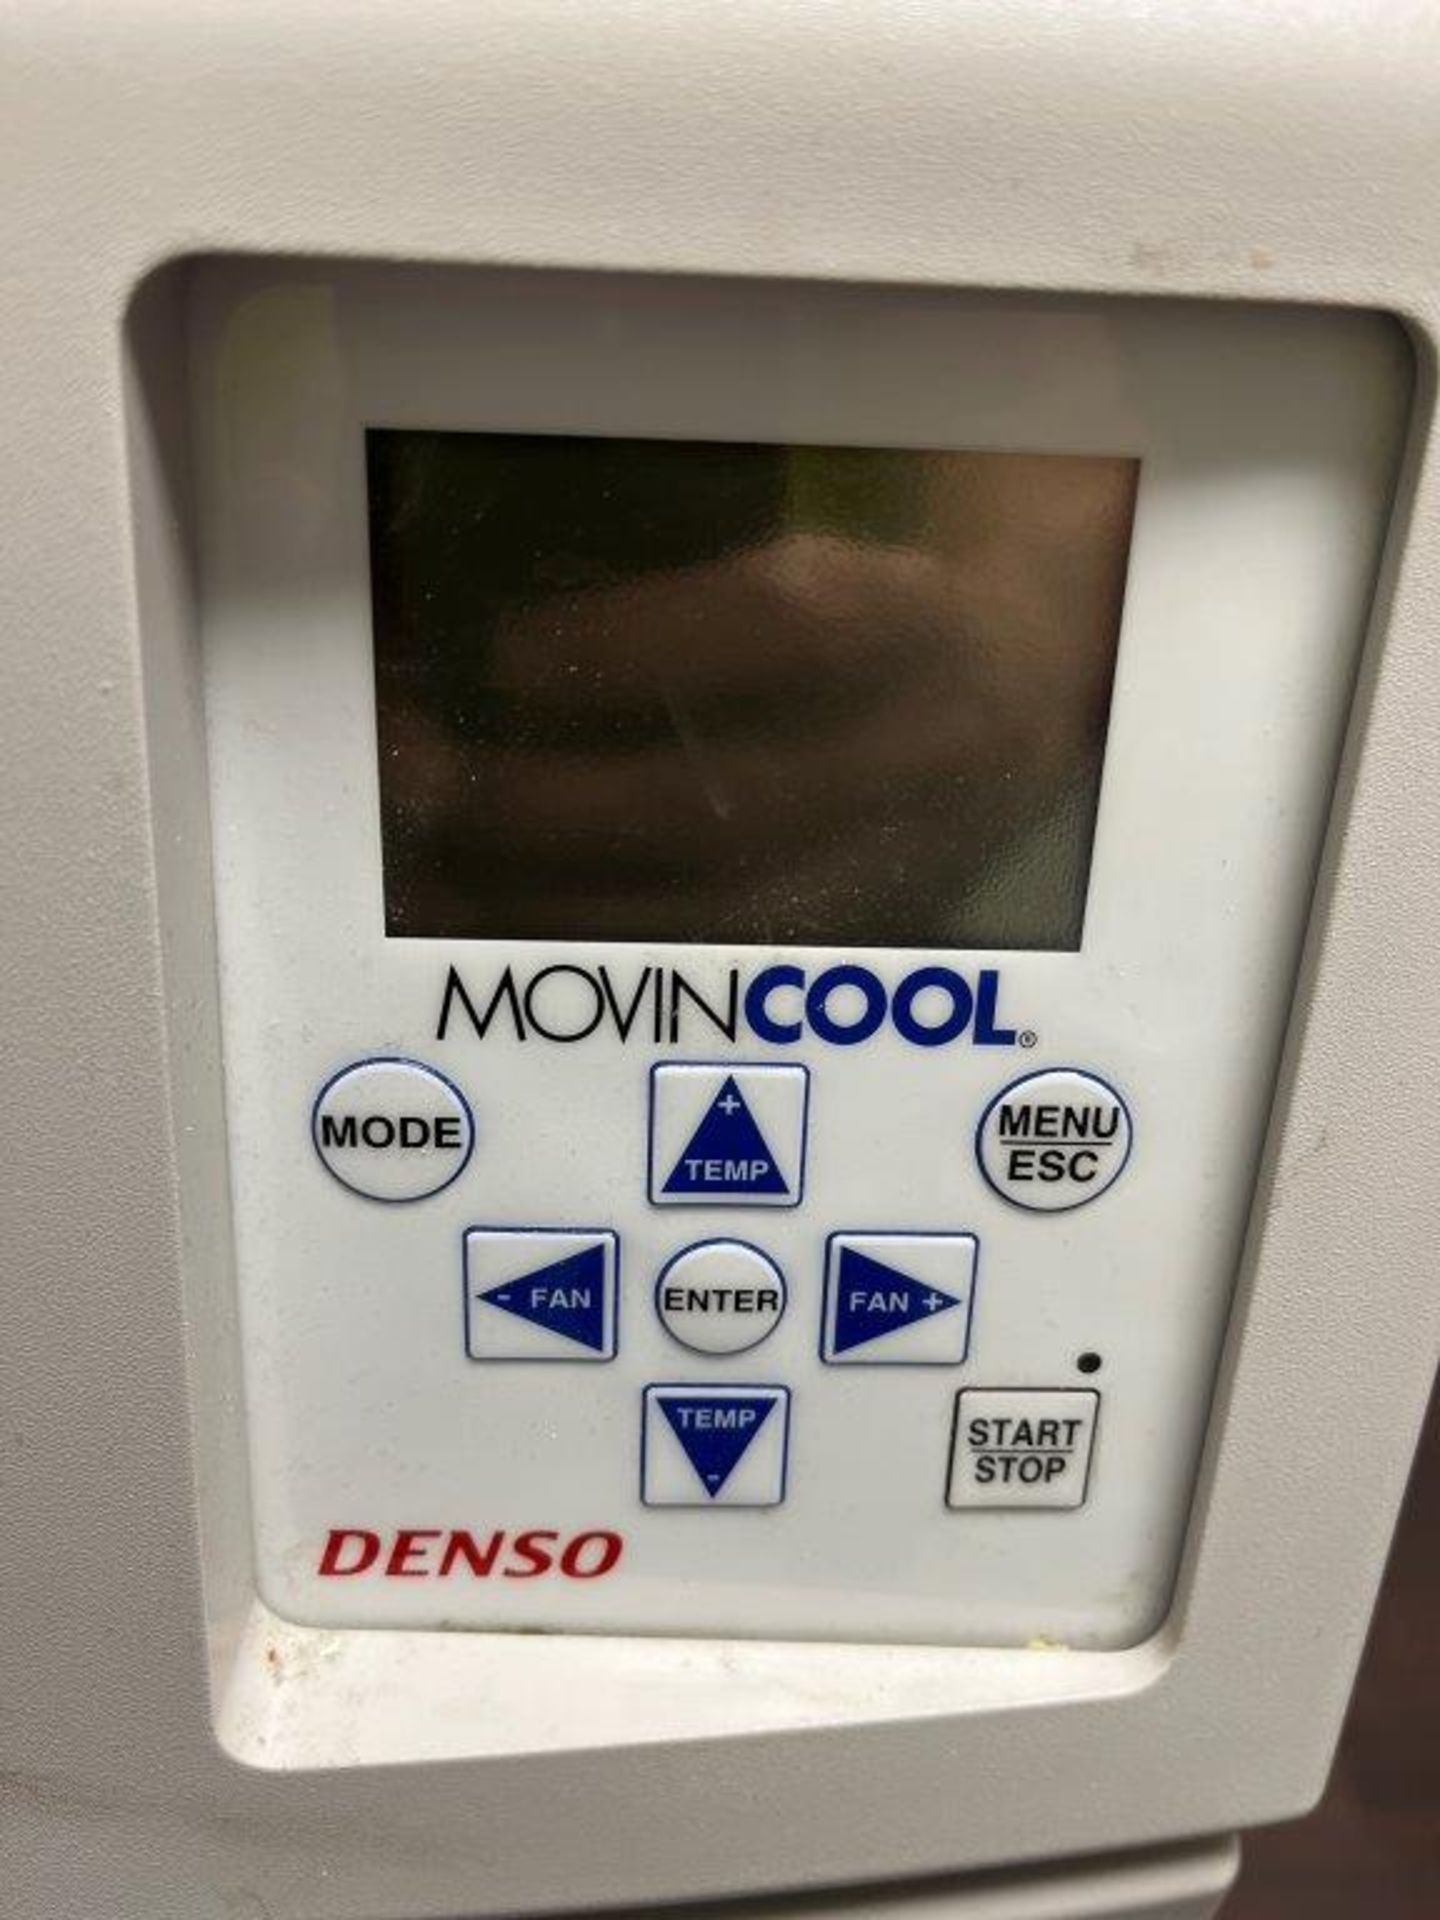 Denso Movincool Climate Pro 18 Mobile Cool/Heat Unit - Bild 2 aus 3